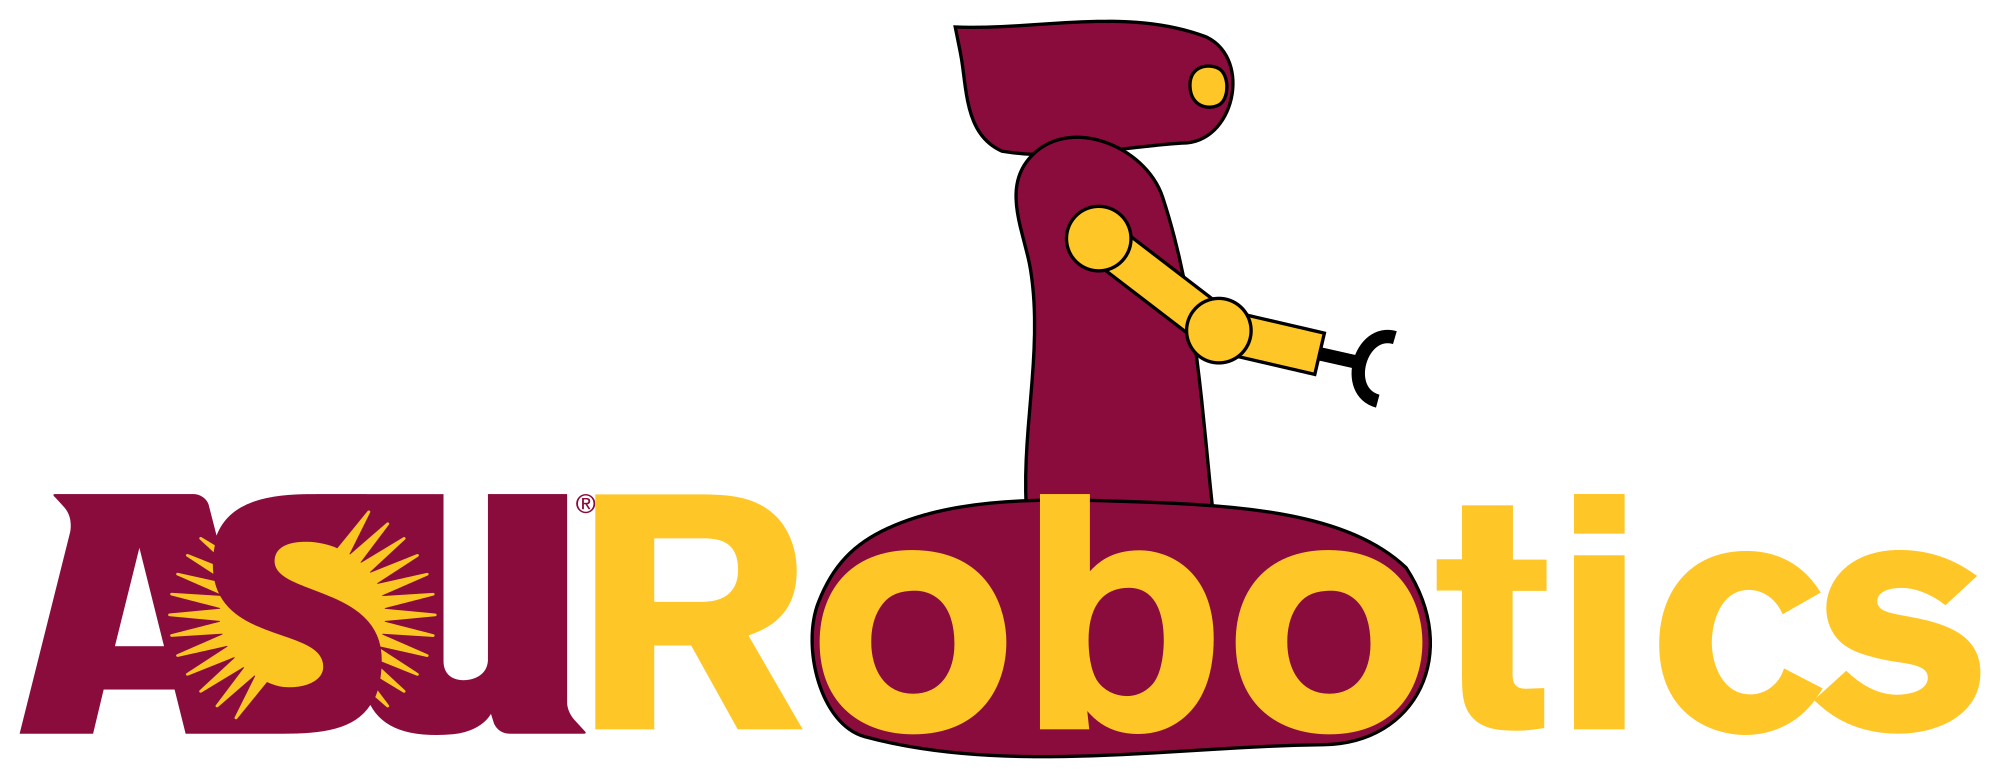 Southwest Robotics Symposium 2020